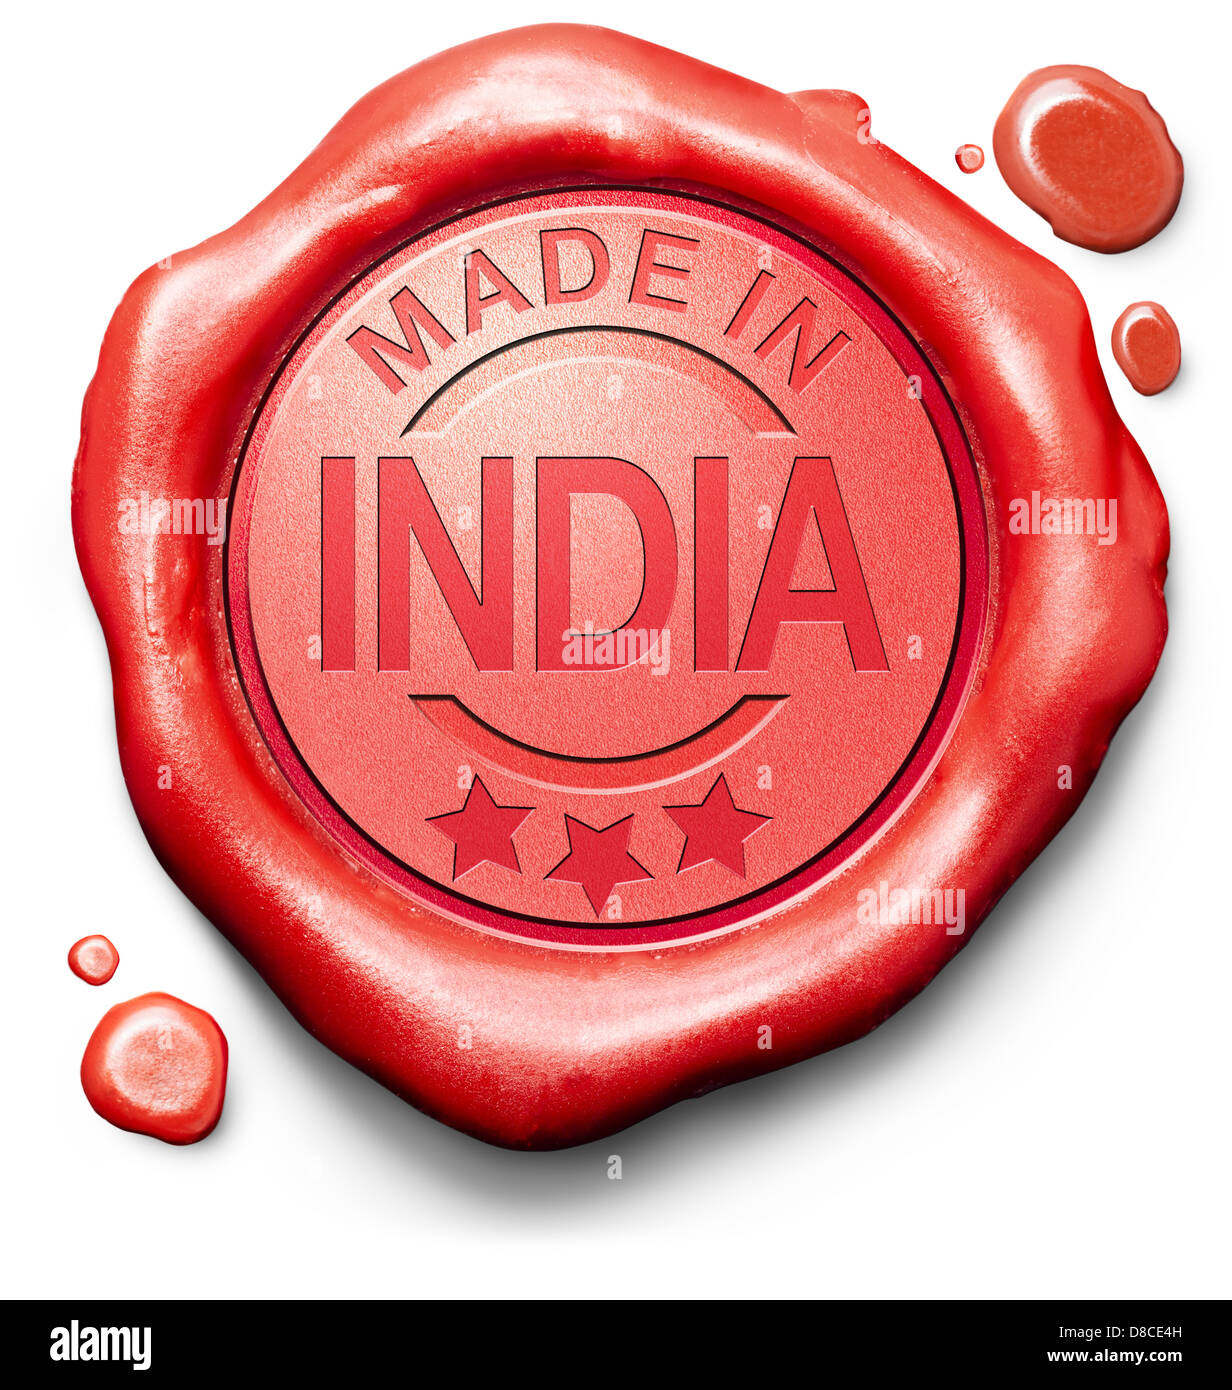 hergestellt in Indien Originalprodukt kaufen lokale kaufen authentische indische Qualität Label rote Wachssiegel Stempel Stockfoto